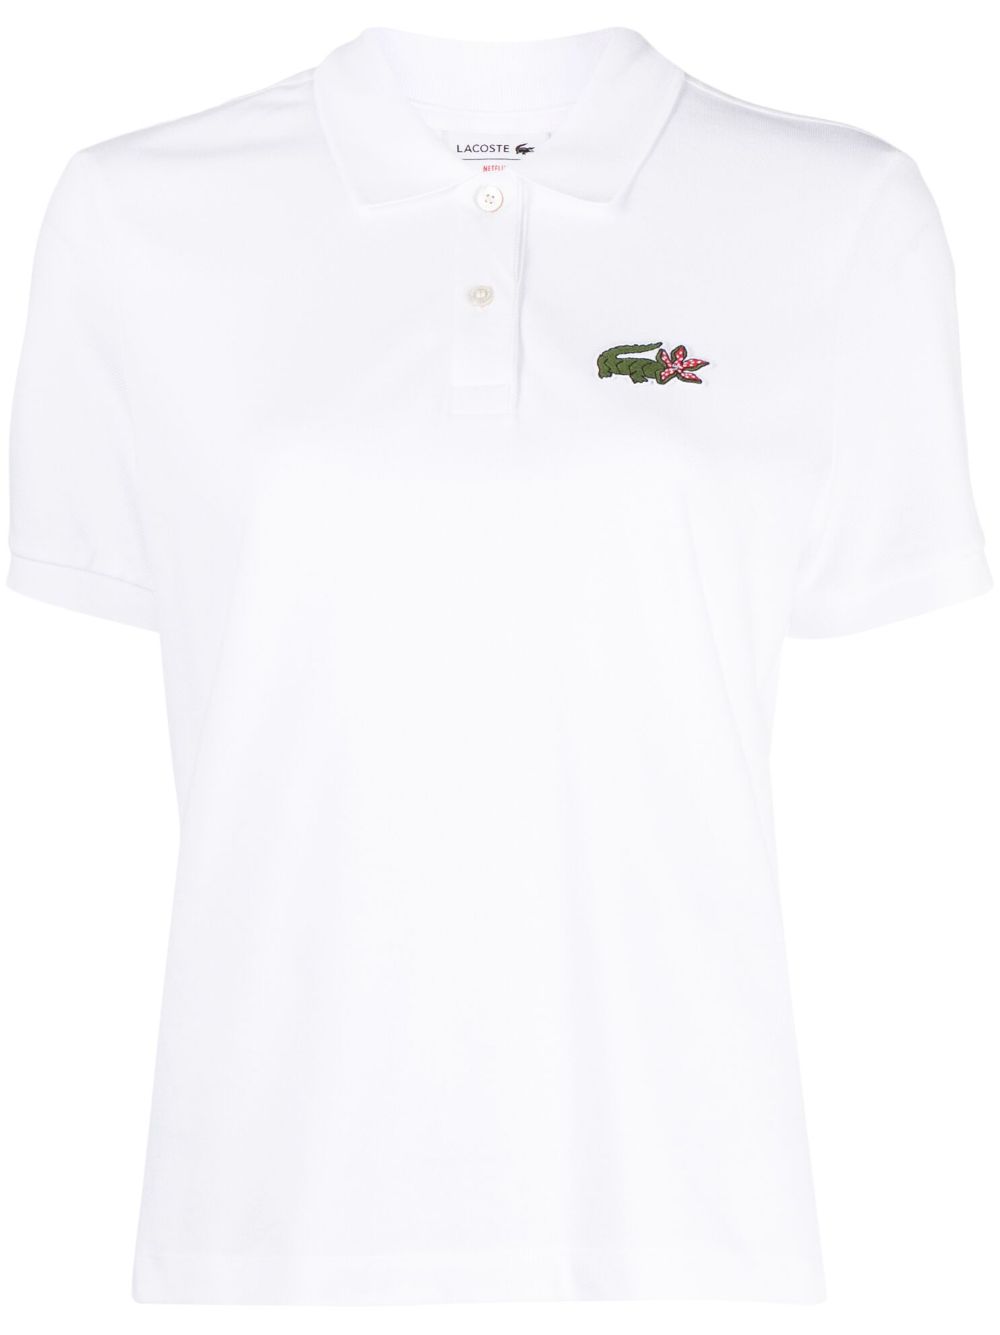 Lacoste Stranger Things short-sleeved polo shirt - White